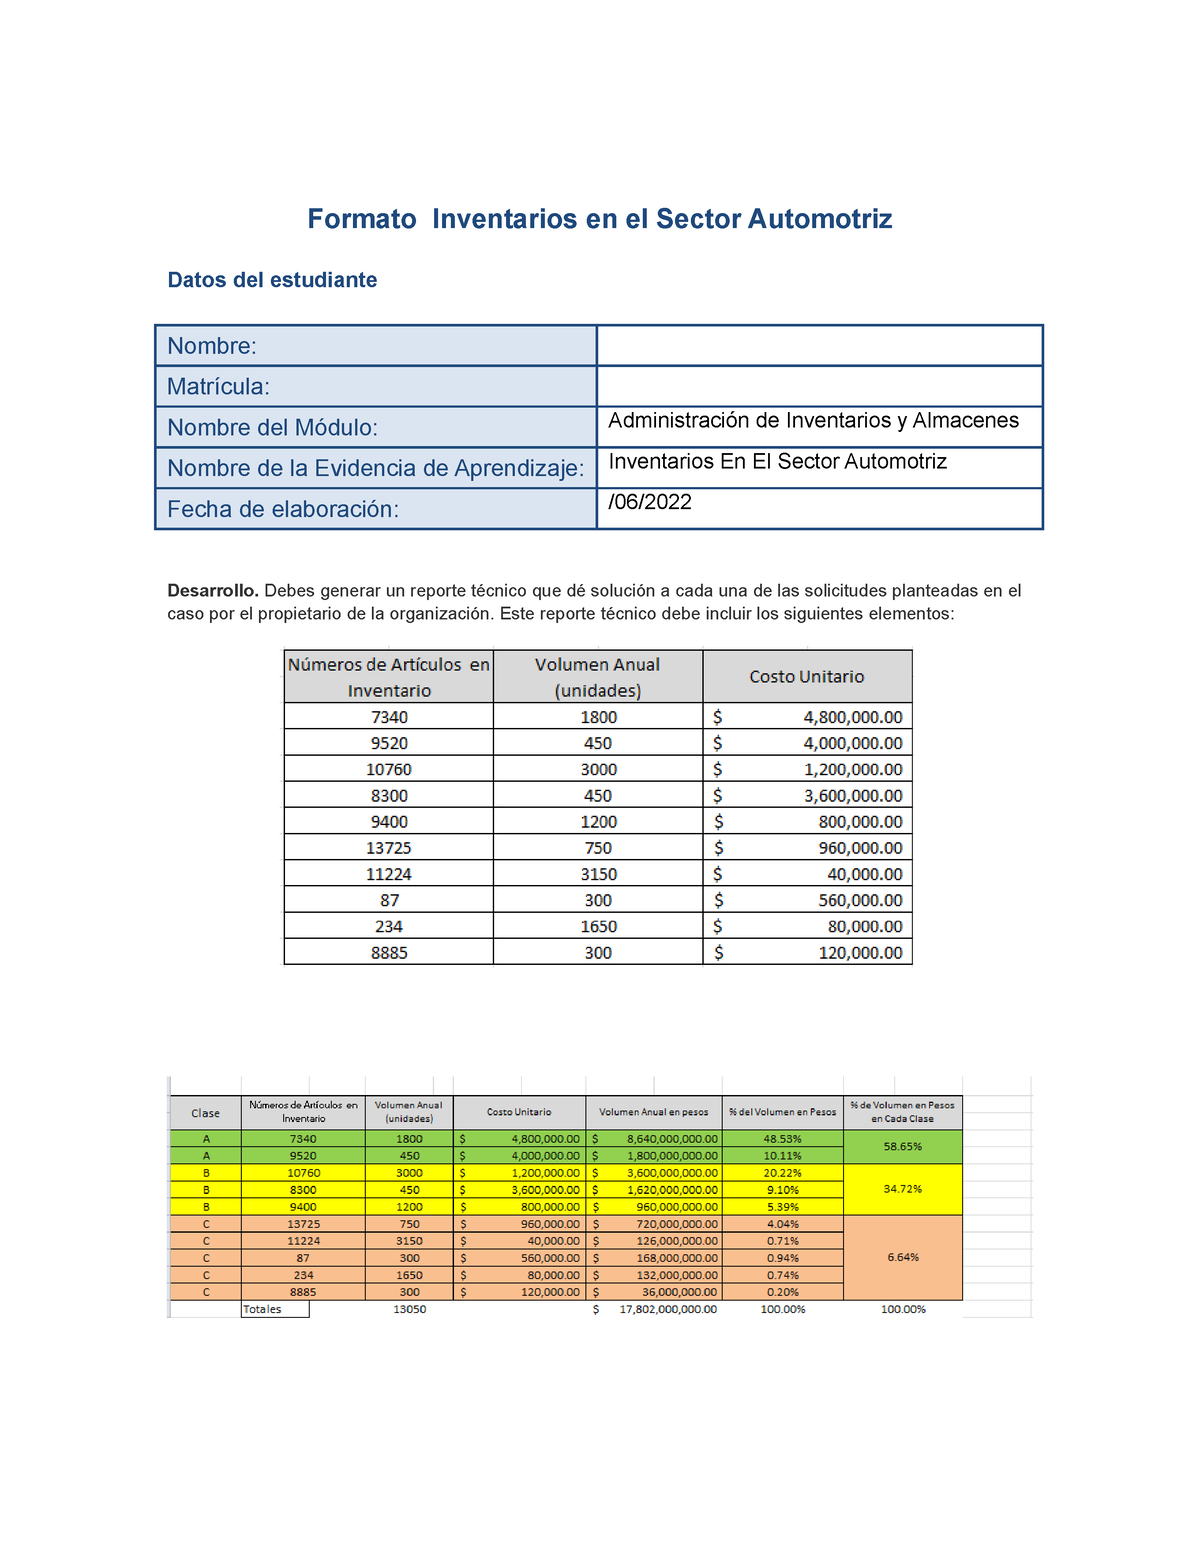 Inventario En El Sector Automotriz Ea 2 Formato Inventarios En El Sector Automotriz Datos Del 7558